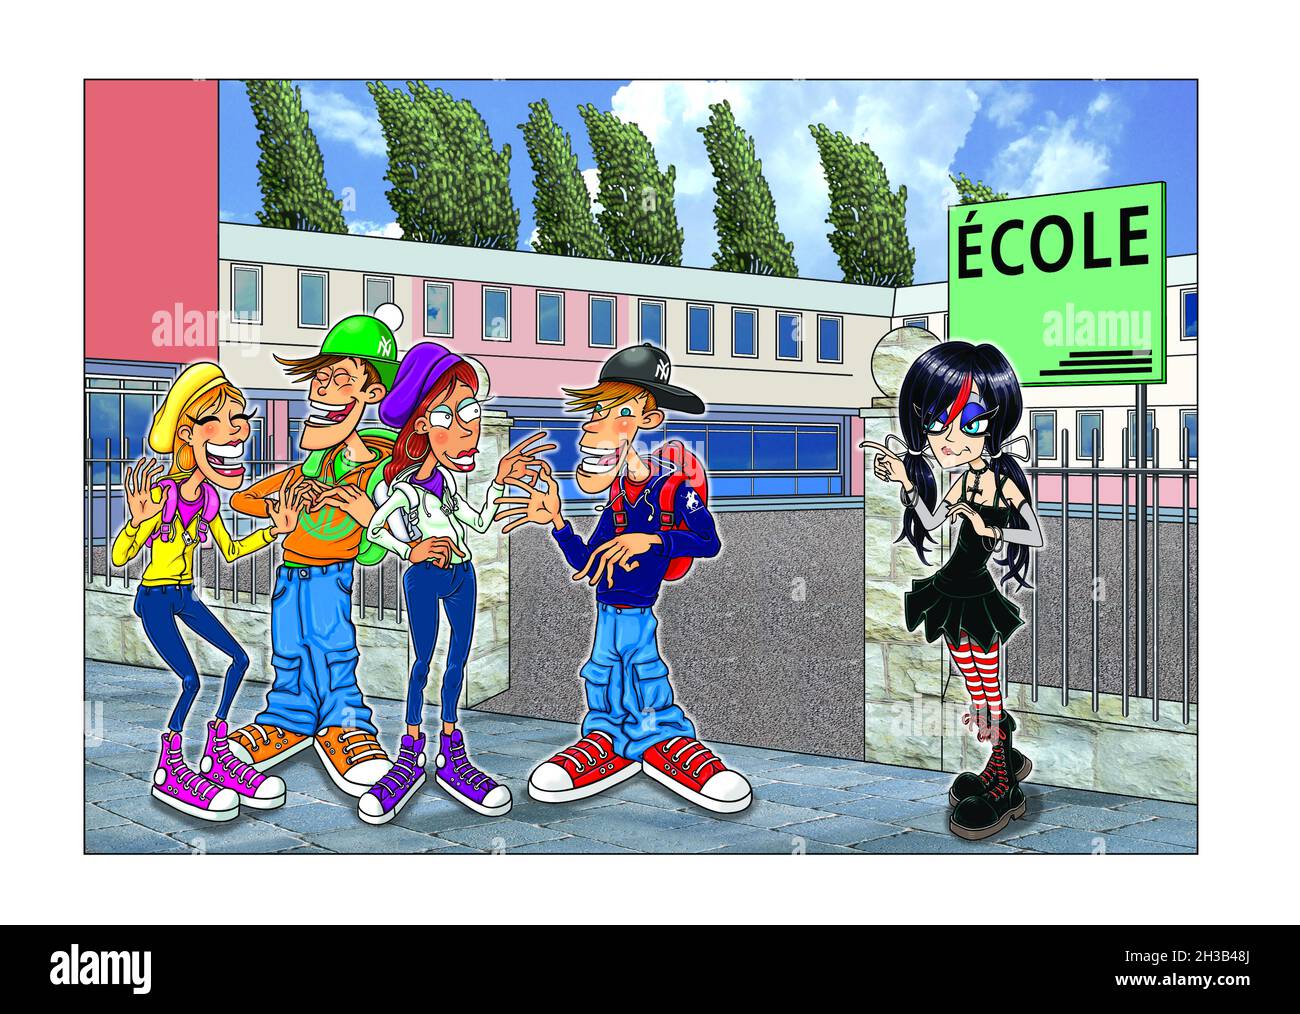 Mixed-Media-Kunst Illustration Goth Mädchen + lässig gekleidete Jugendliche außerhalb der Schulen / Bildungseinrichtungen in Frankreich. Neues Kind in der Schule, in der Menge. Stockfoto